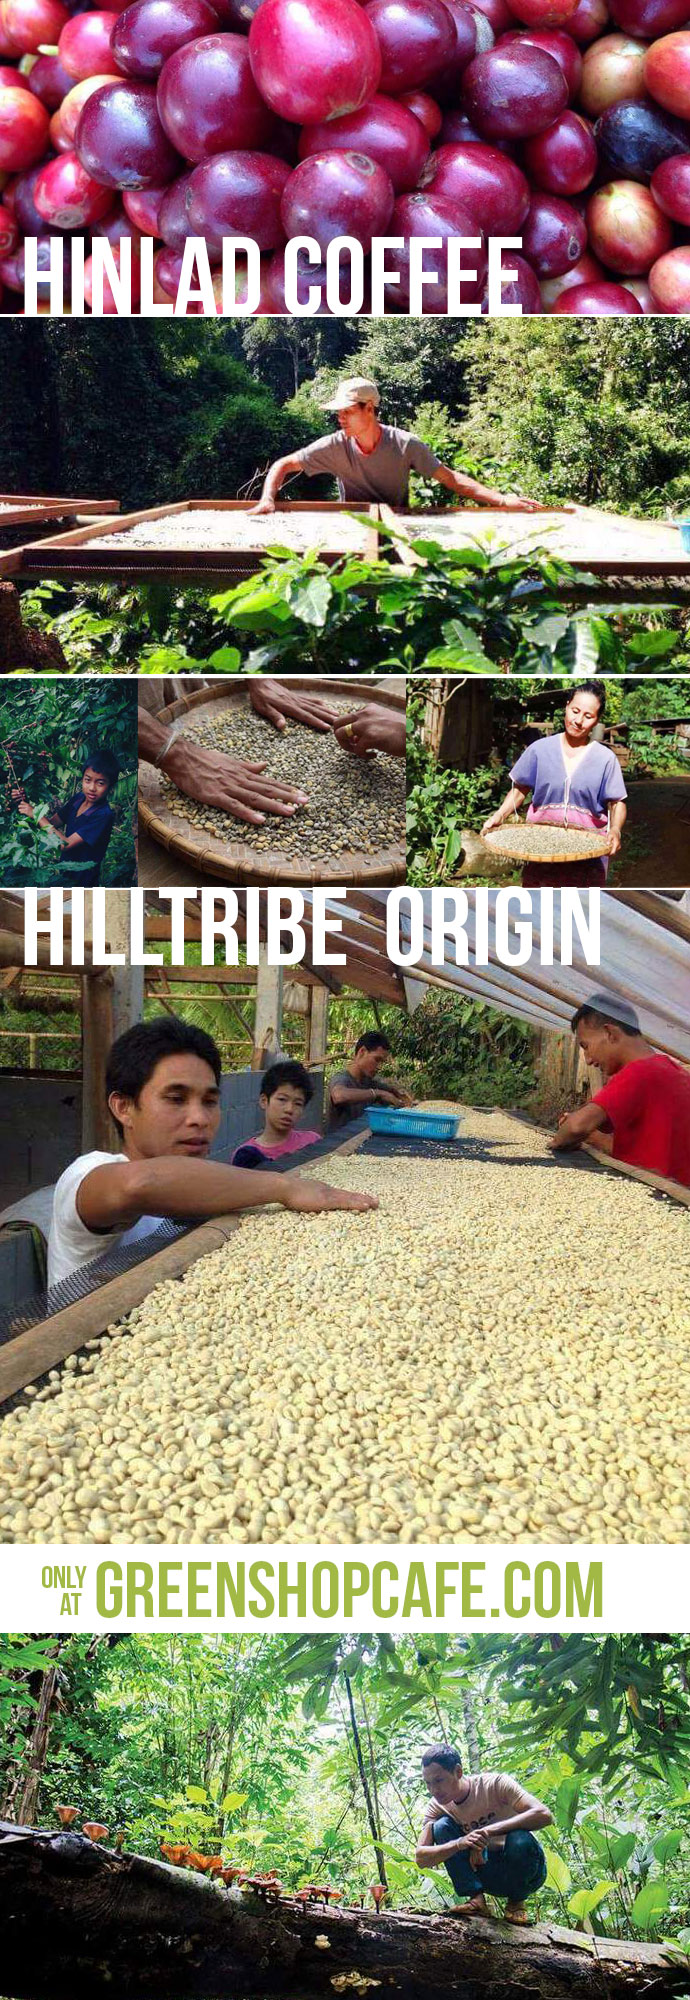 กาแฟอินทรีย์หินลาด แบบบด 250g. Hinlad Organic Coffee (grind) Green Select | ผลิตภัณฑ์คัดสรรโดย GreenShopCafe